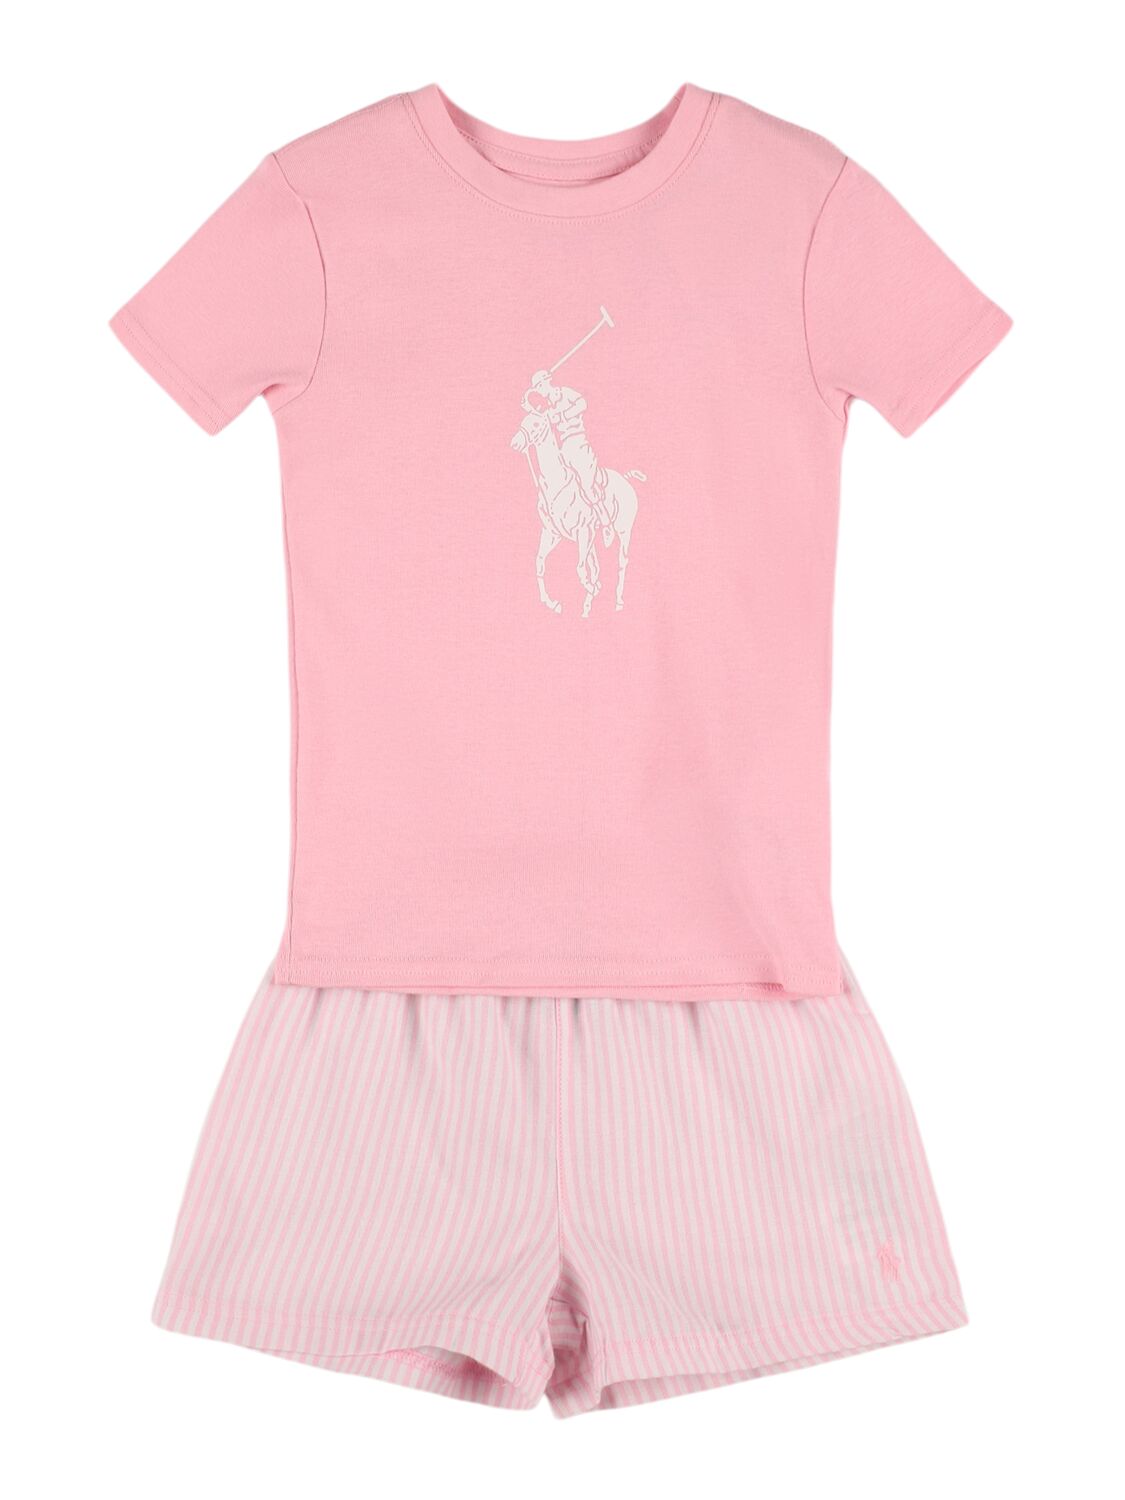 Ralph Lauren Kids' Cotton Jersey T-shirt & Shorts In Pink